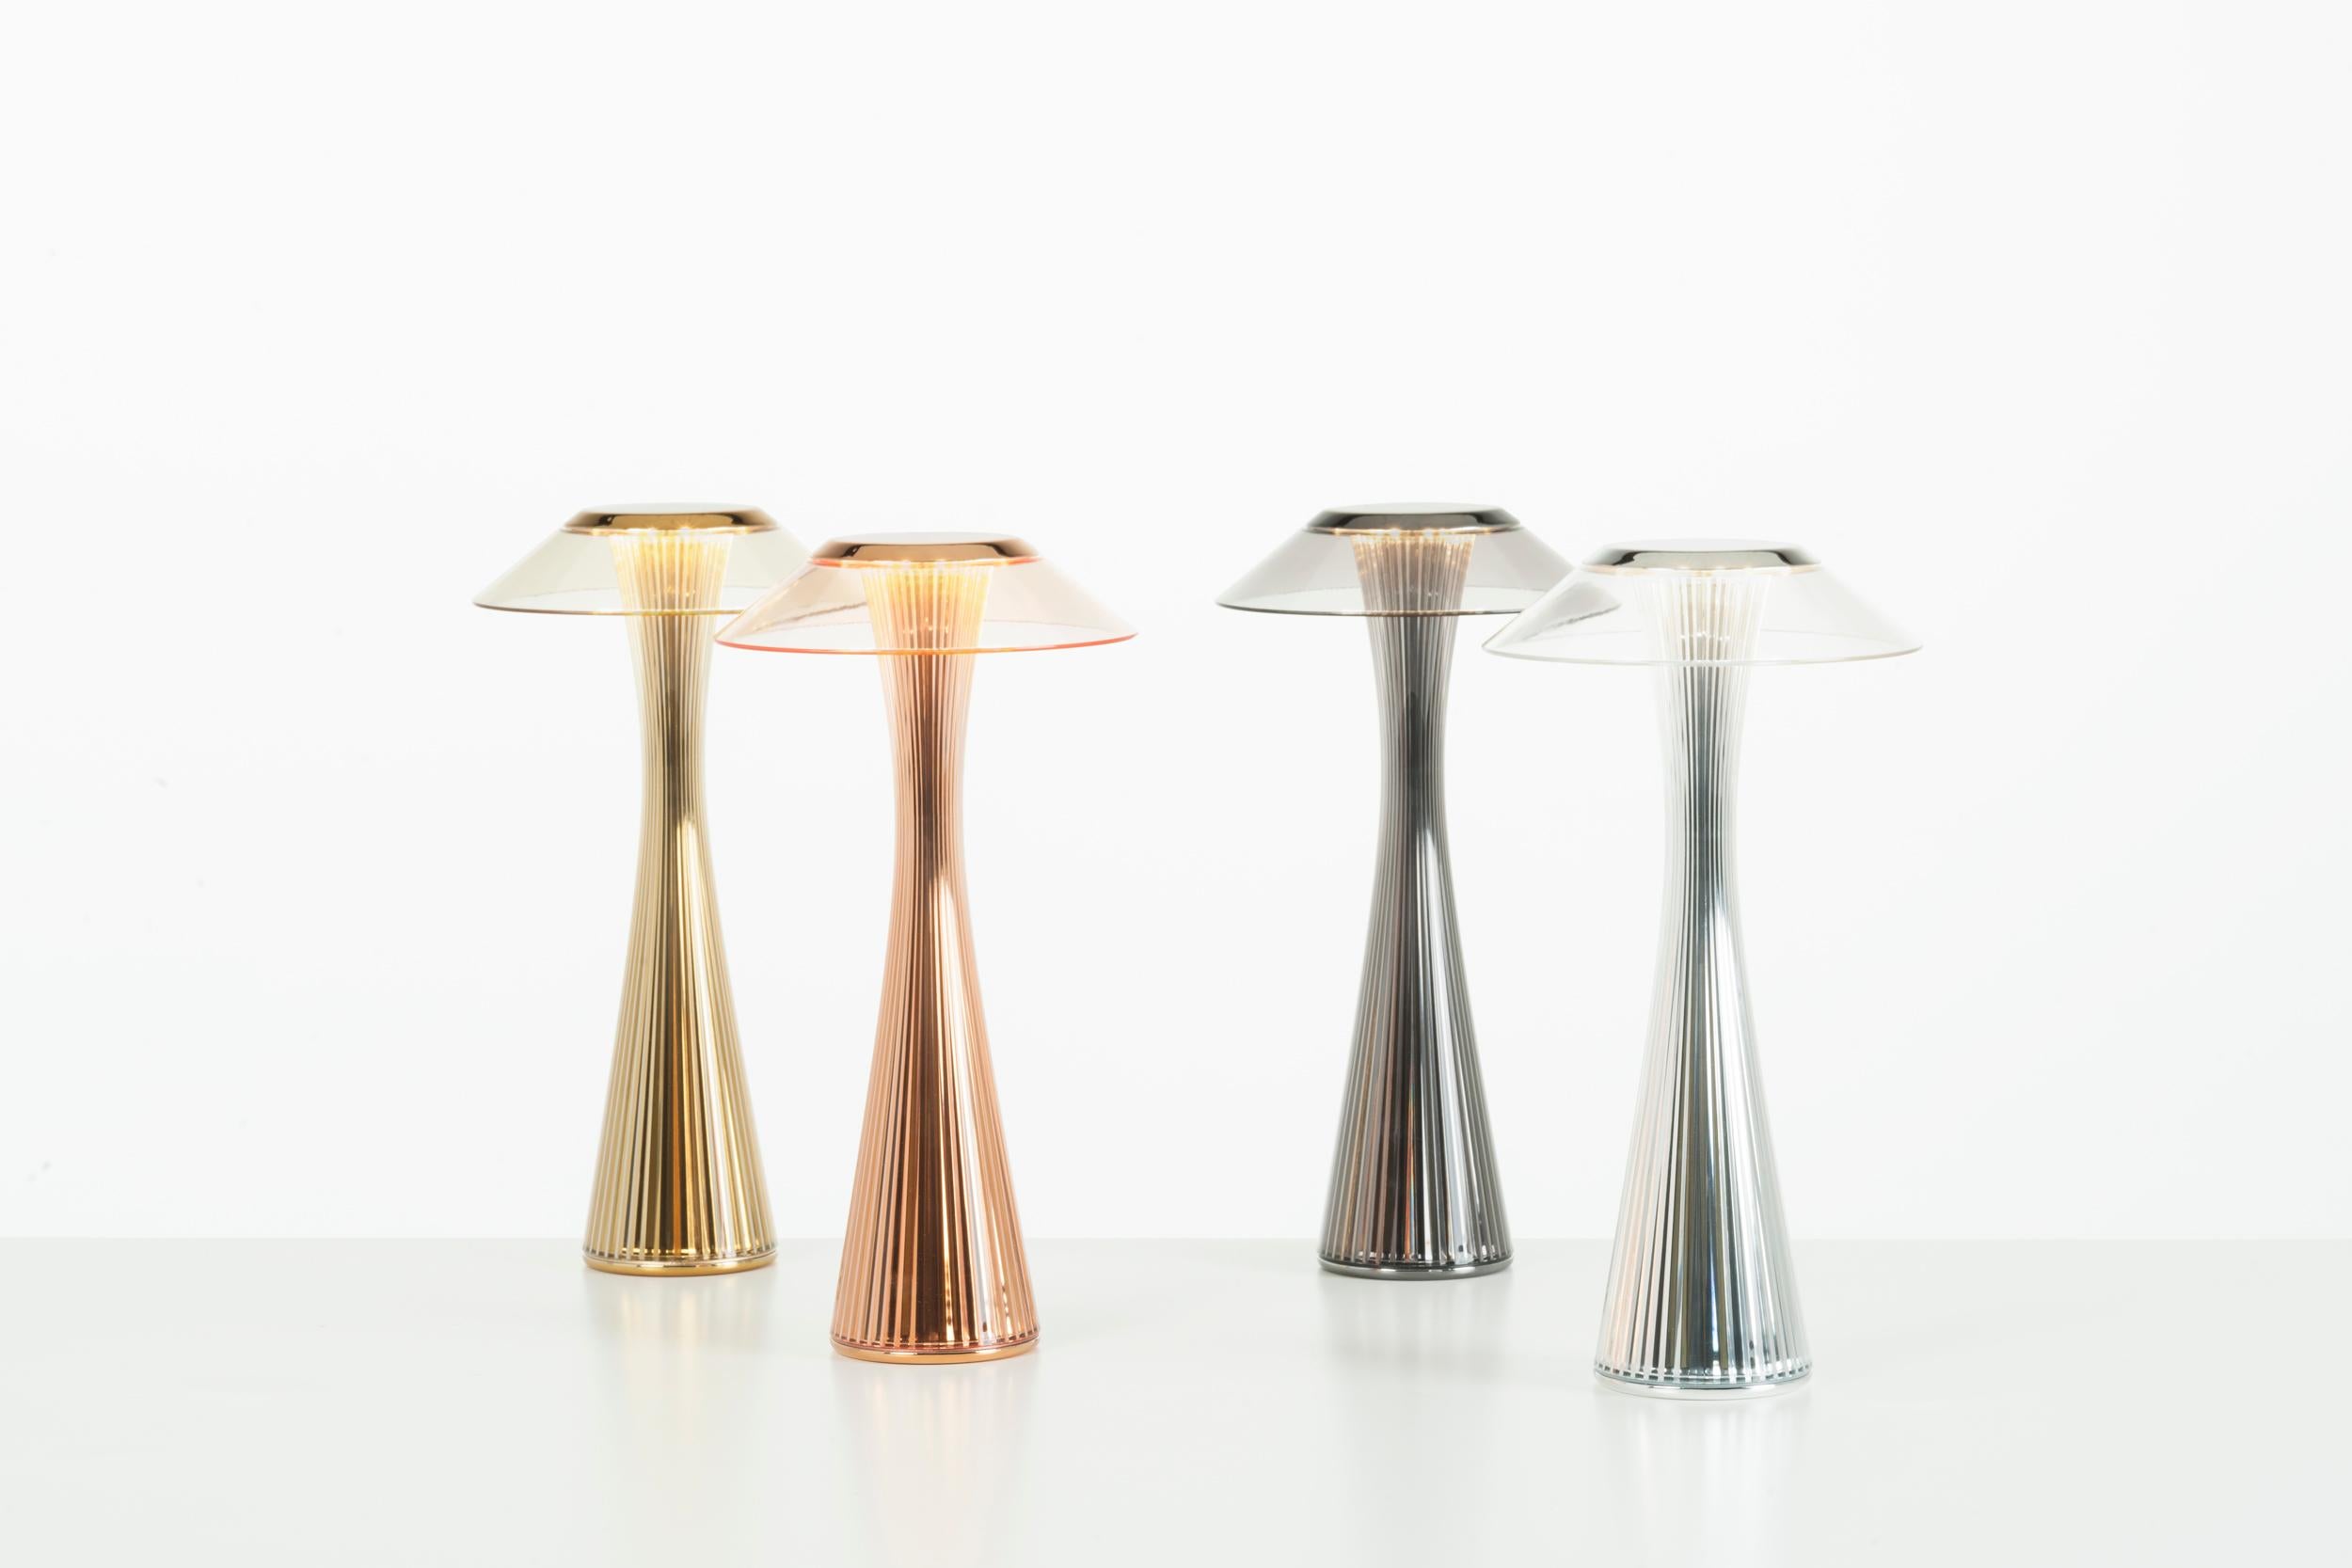 Une lampe de table en plastique transparent de forme allongée : la Silhouette rappelle les formes de la Space Needle, la tour qui a rendu célèbre la ligne d'horizon de Seattle. 